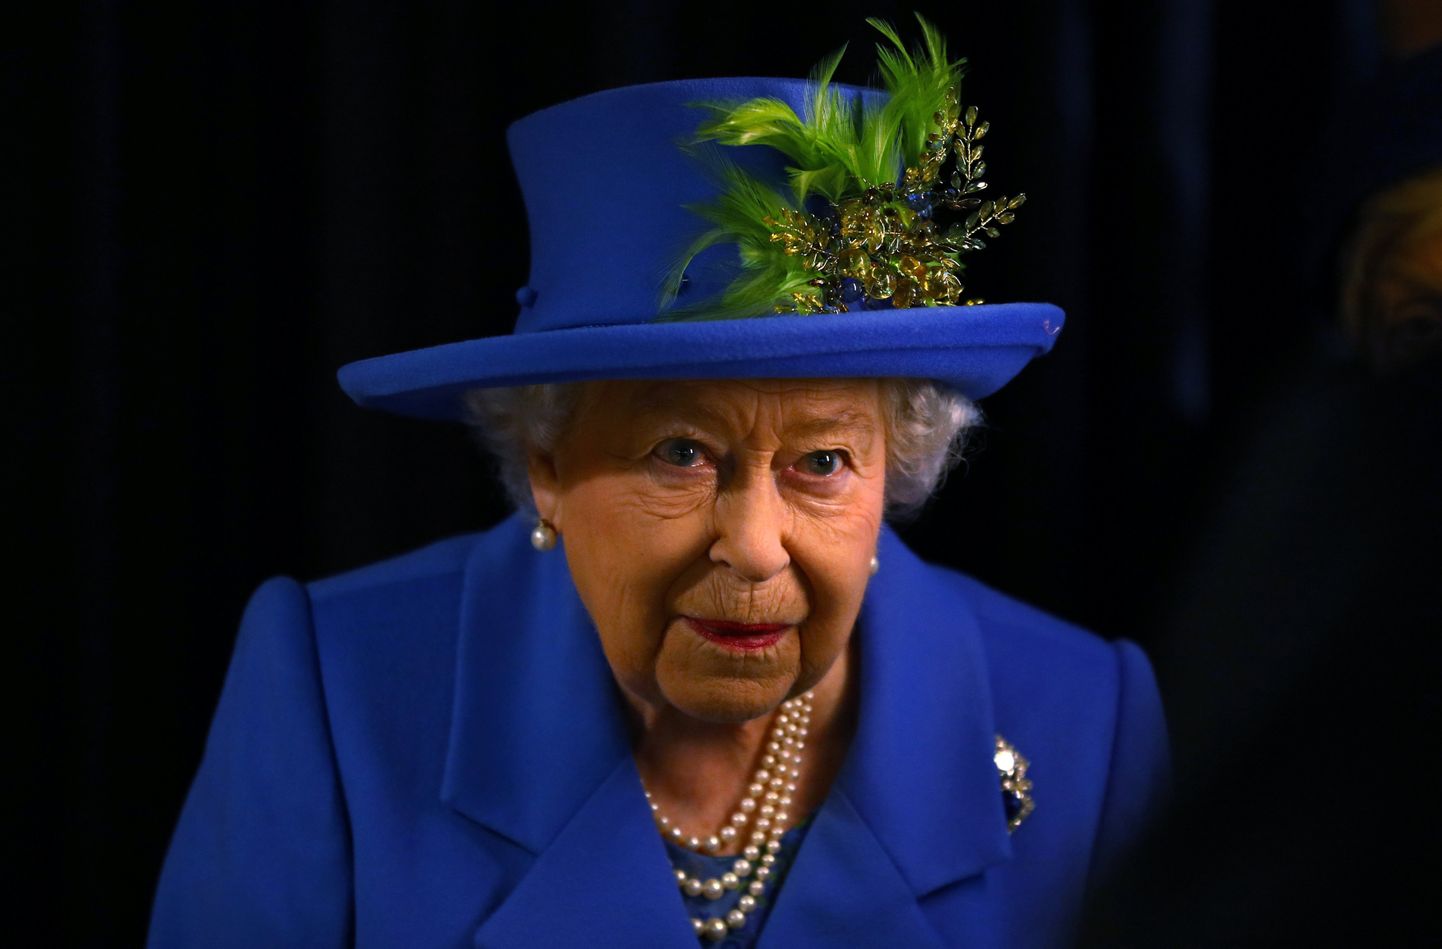 Kuninganna Elizabeth II on ülemuseks rohkem kui tuhandele inimesele